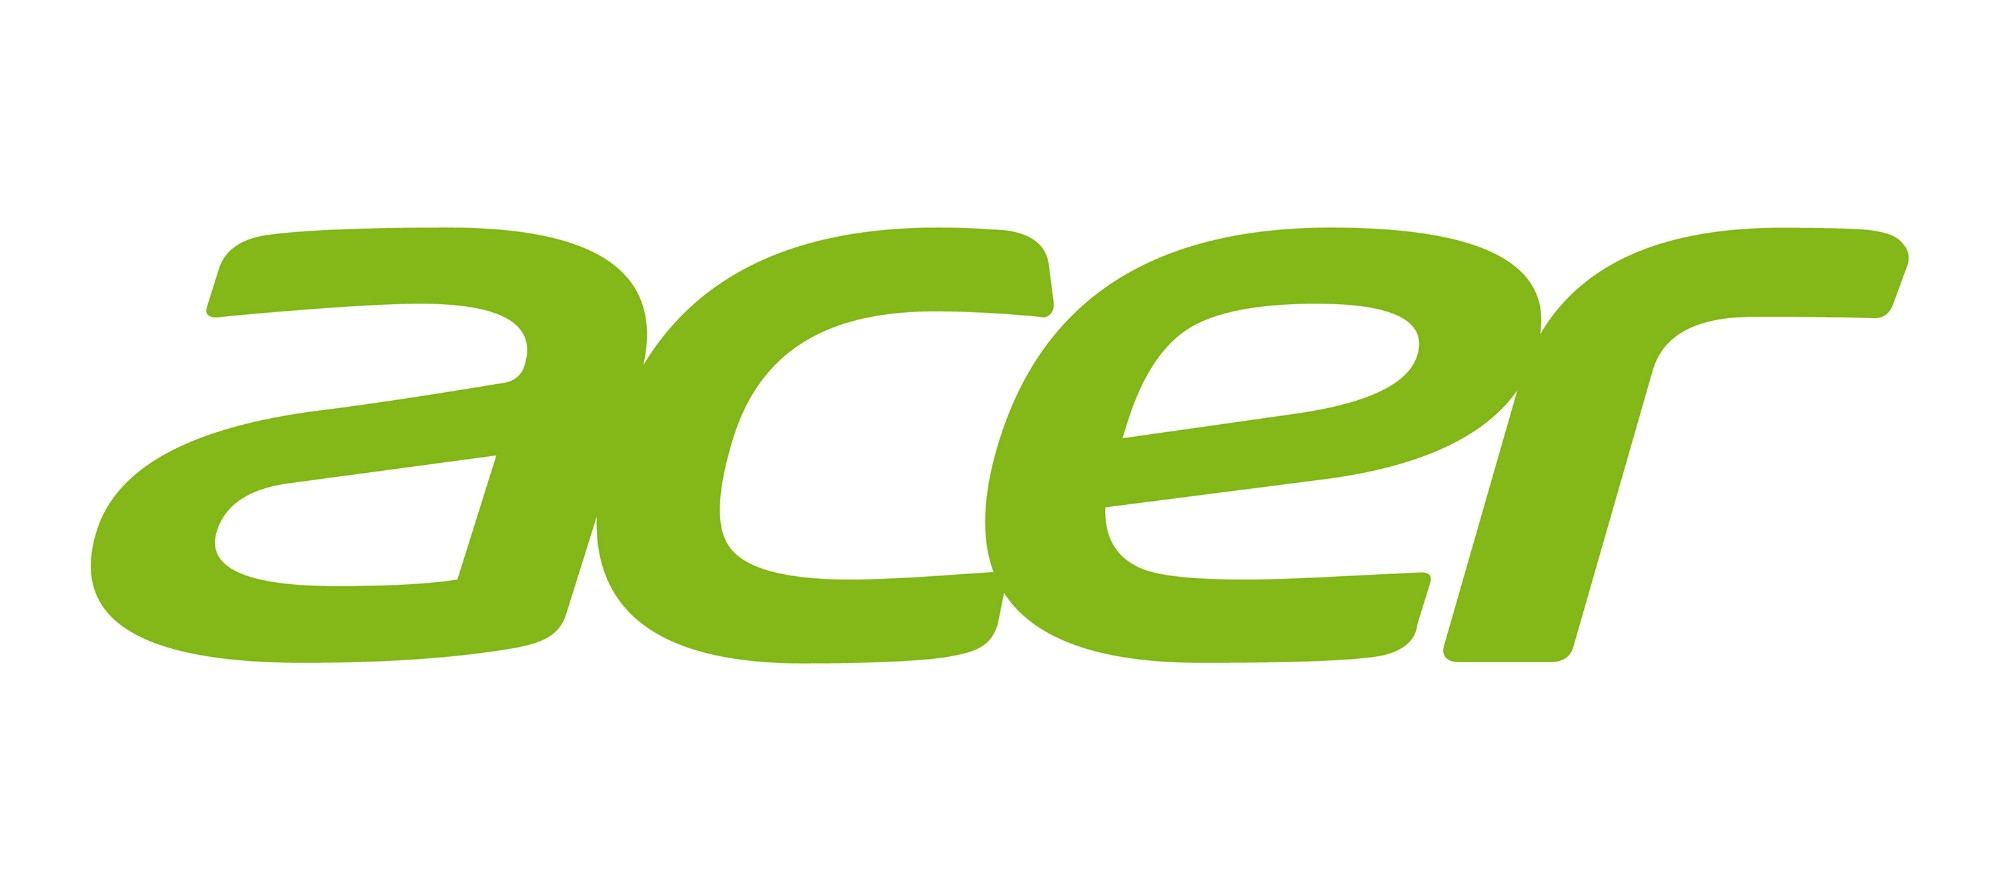 Acer KP.04501.012 eladaptrar